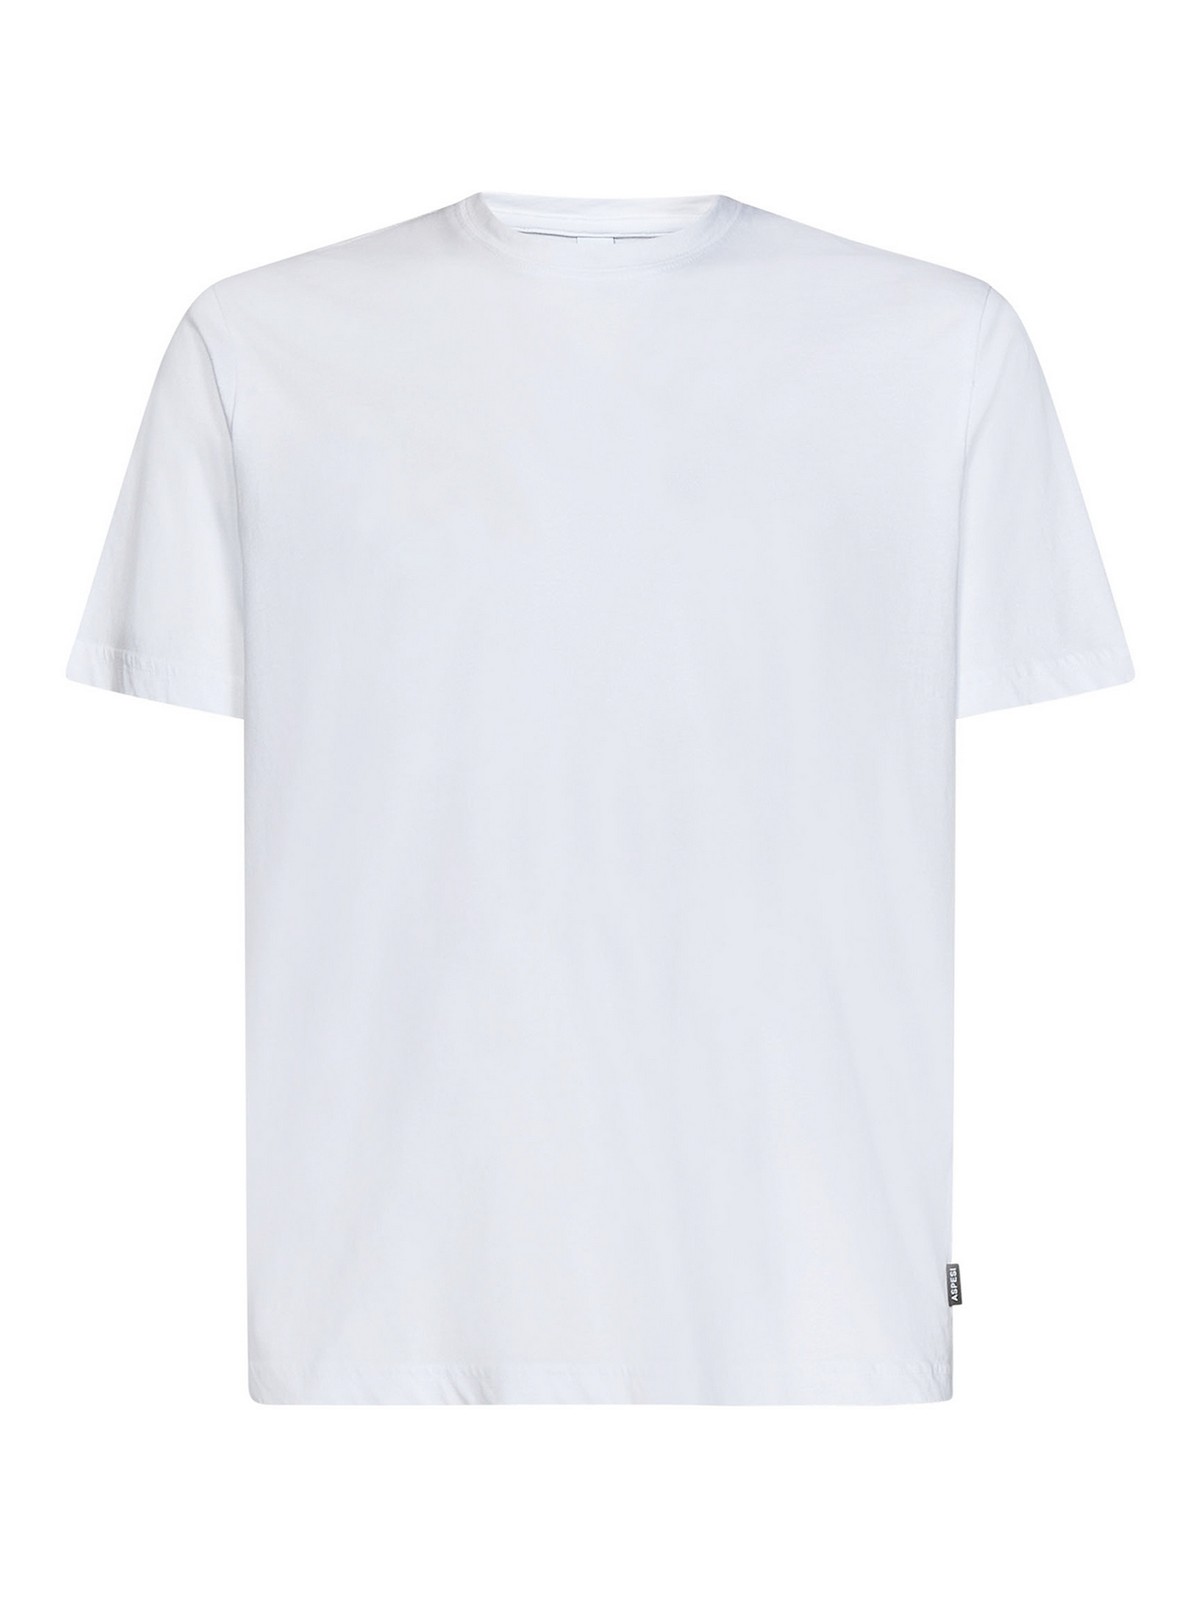 Aspesi White Cotton Crewneck T-shirt